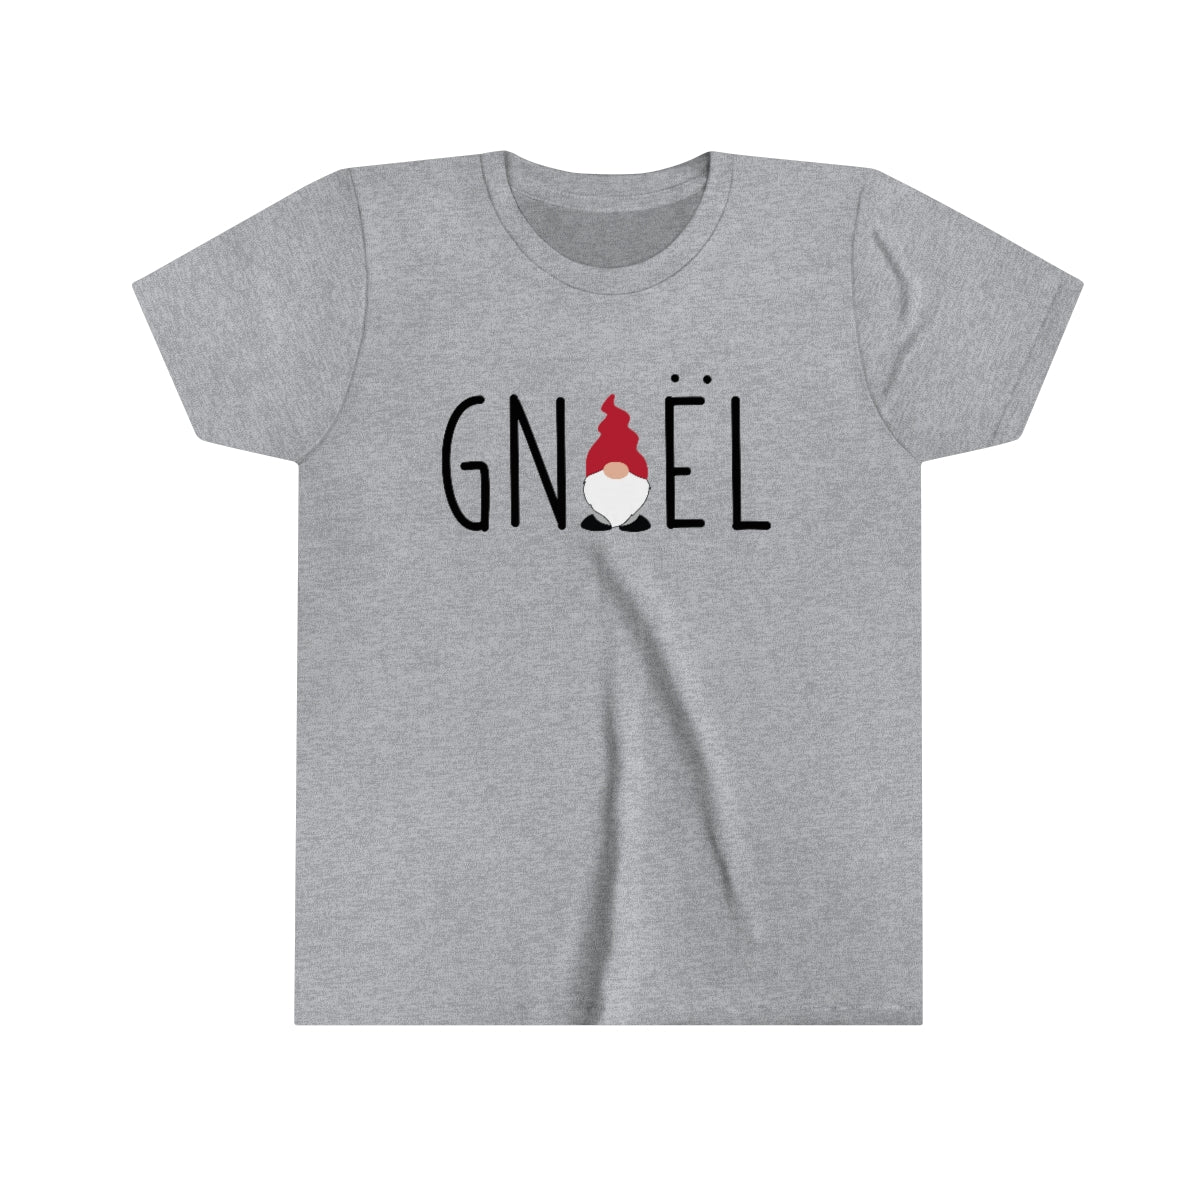 Gnoel Kids T-Shirt Scandinavian Design Studio